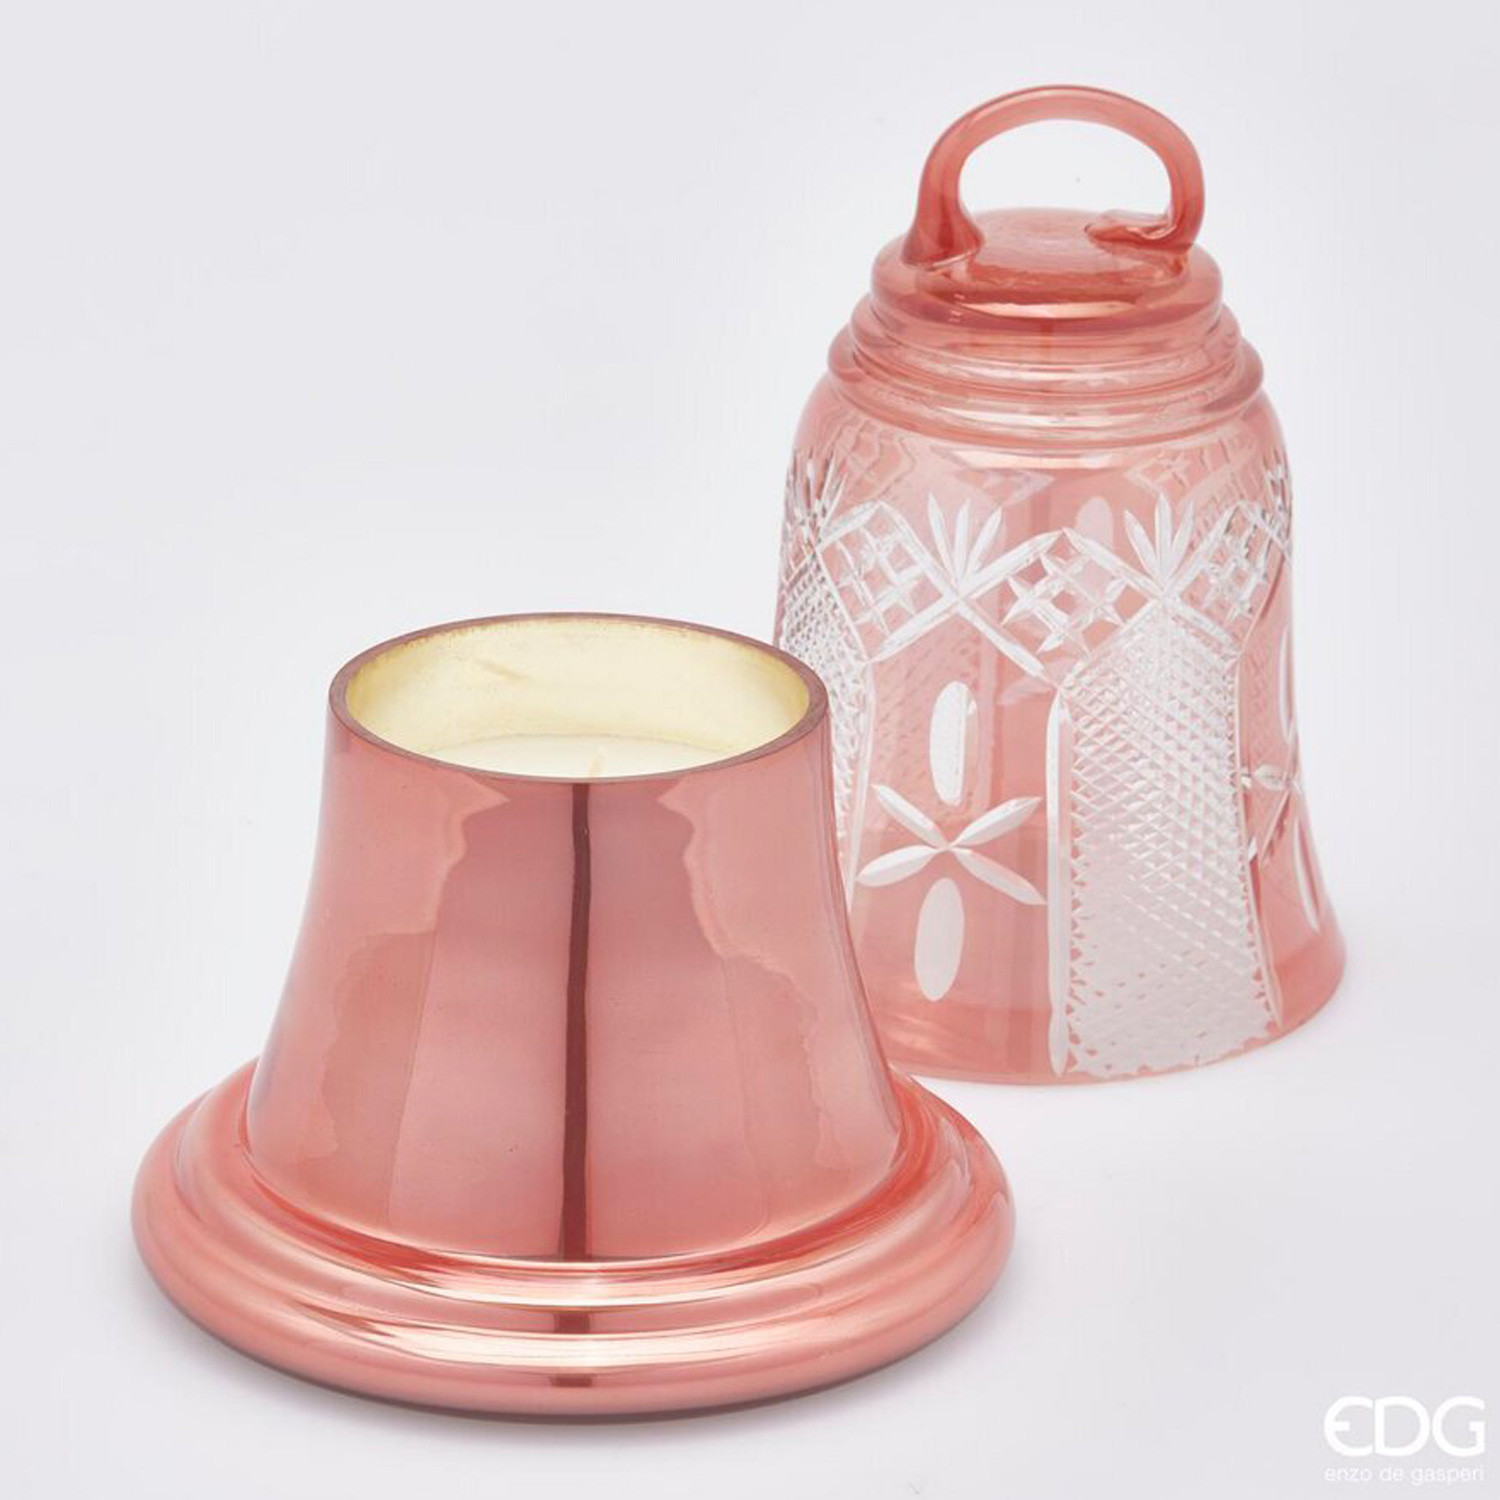 Candela campana in vetro rosa - 1000 gr - EDG